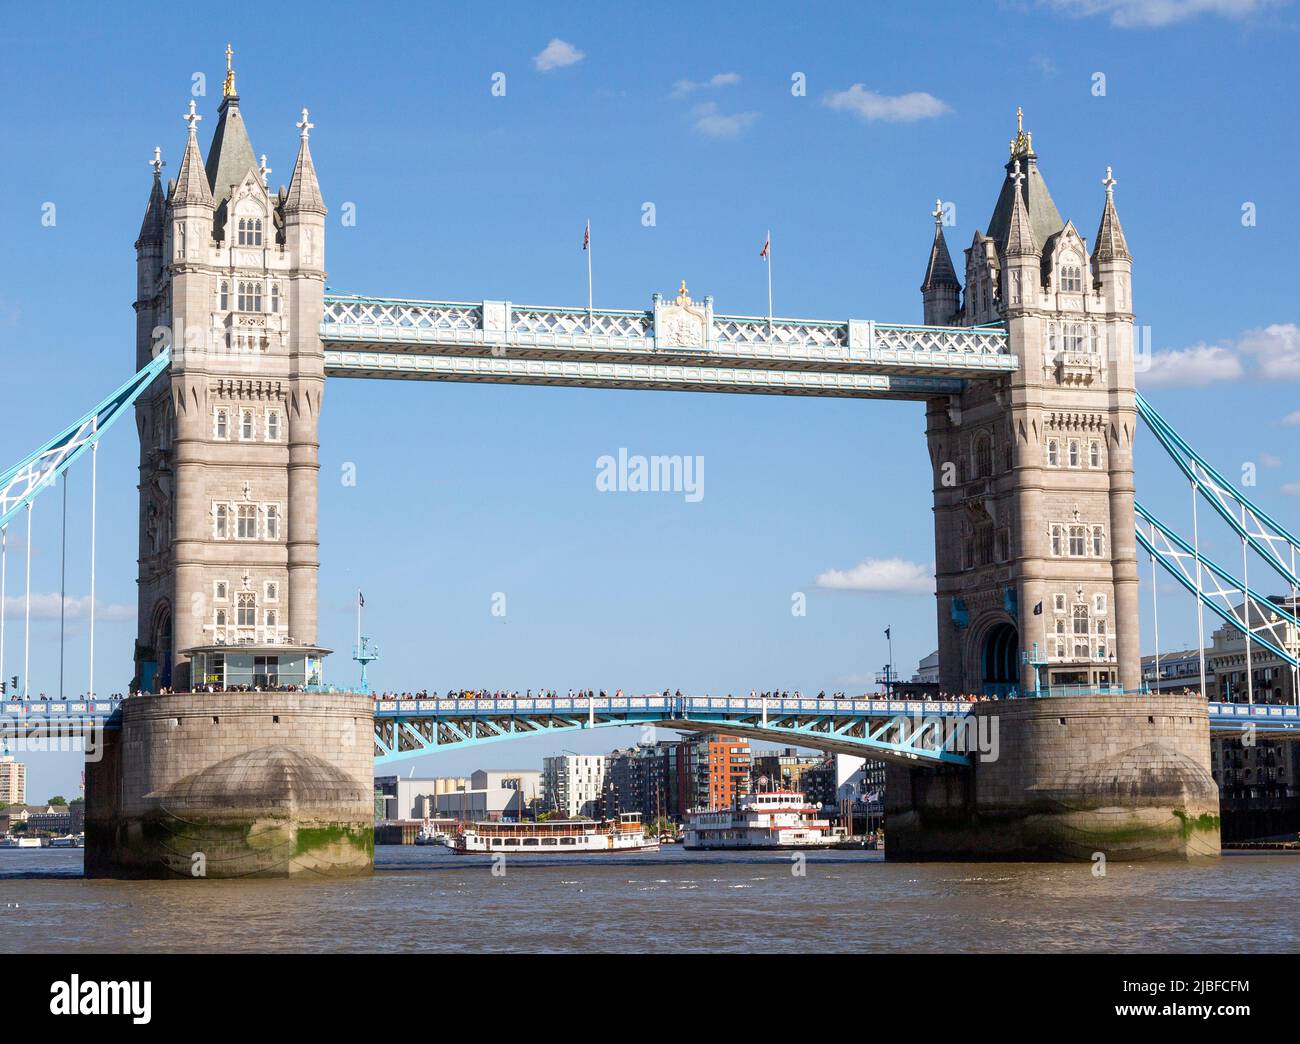 Tower Bridge et la Tamise, Tower Hill, Londres, Angleterre, Royaume-Uni Banque D'Images